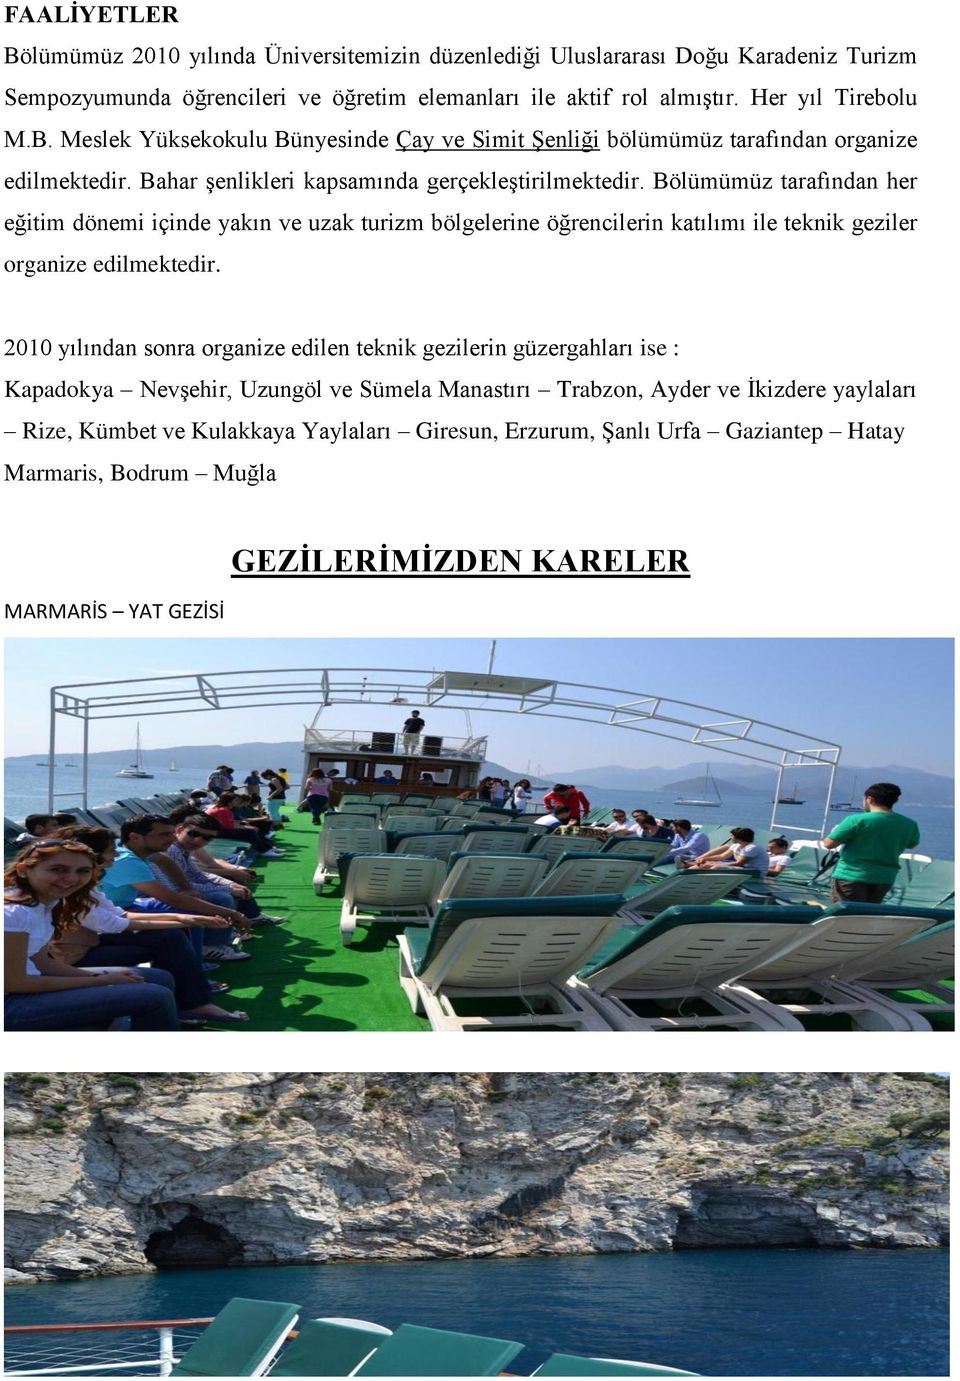 2010 yılından sonra organize edilen teknik gezilerin güzergahları ise : Kapadokya NevĢehir, Uzungöl ve Sümela Manastırı Trabzon, Ayder ve Ġkizdere yaylaları Rize, Kümbet ve Kulakkaya Yaylaları